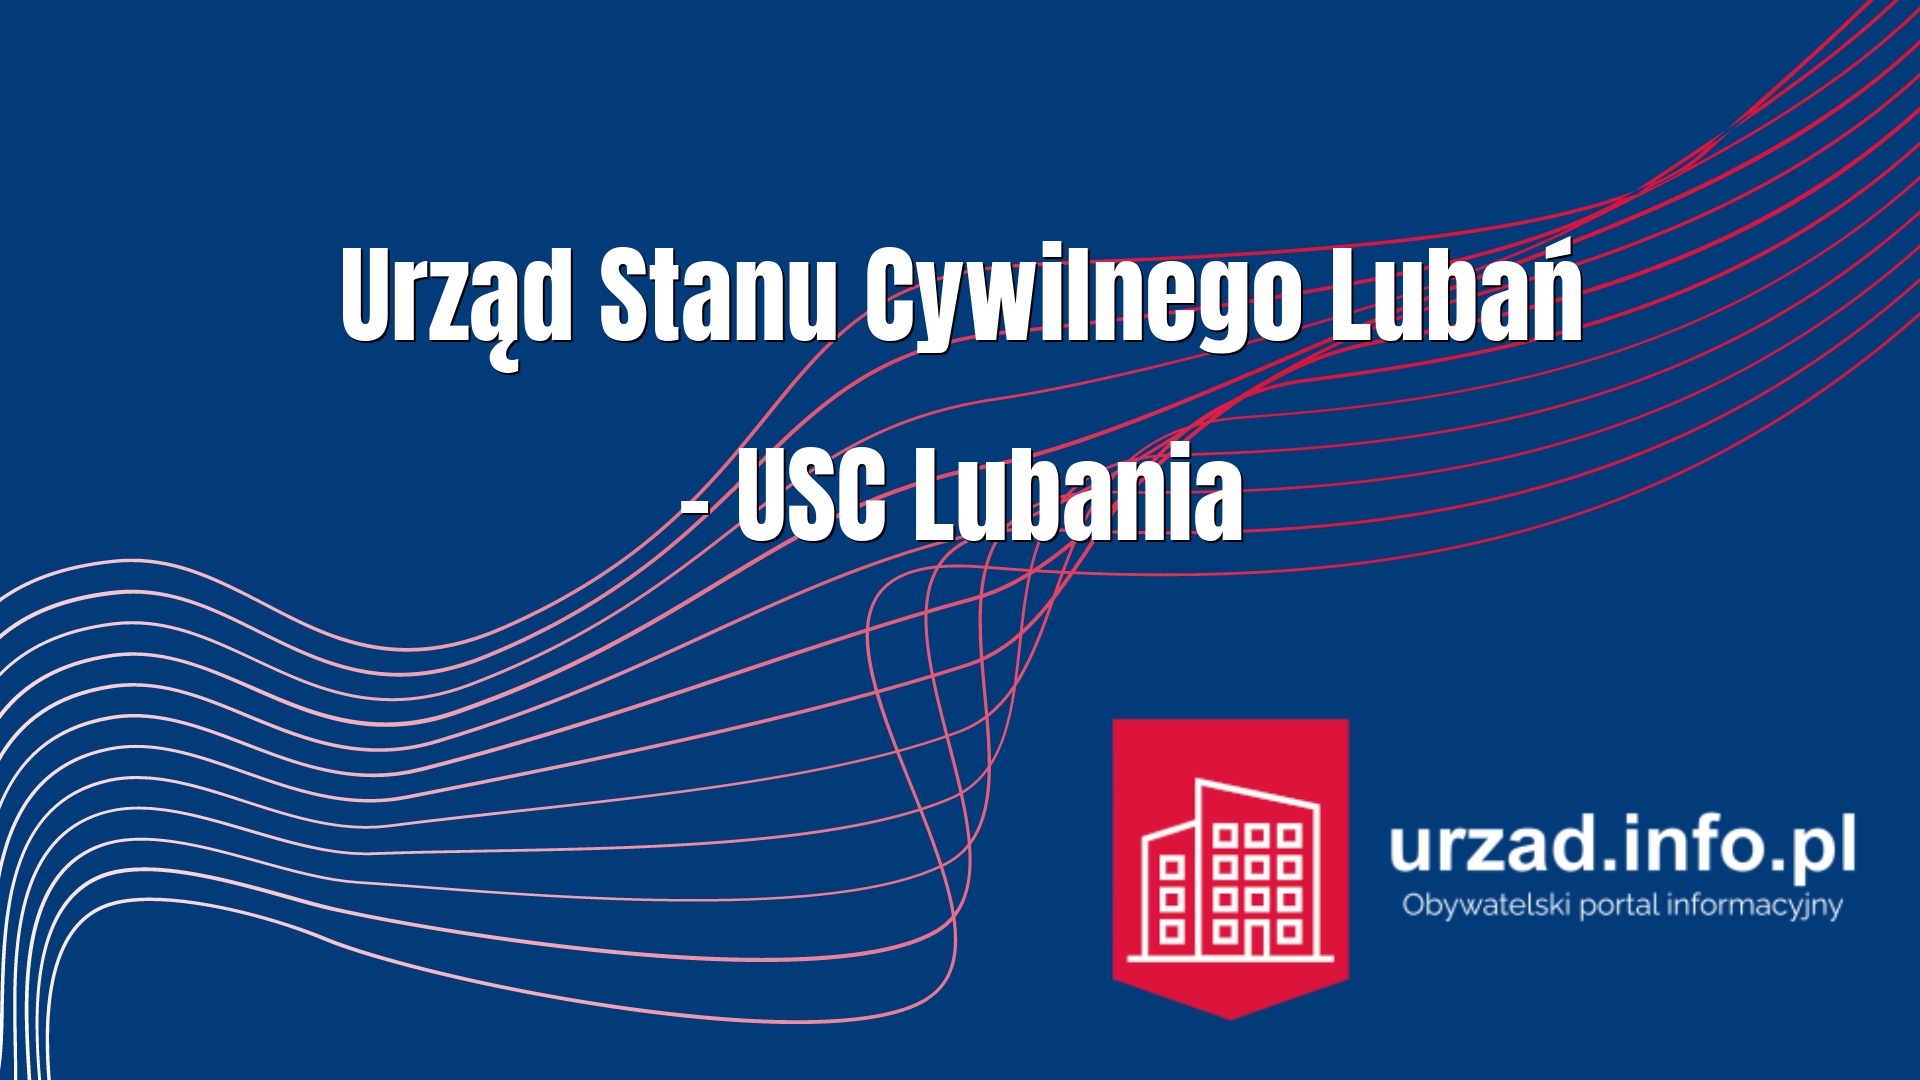 Urząd Stanu Cywilnego Lubań – USC Lubania